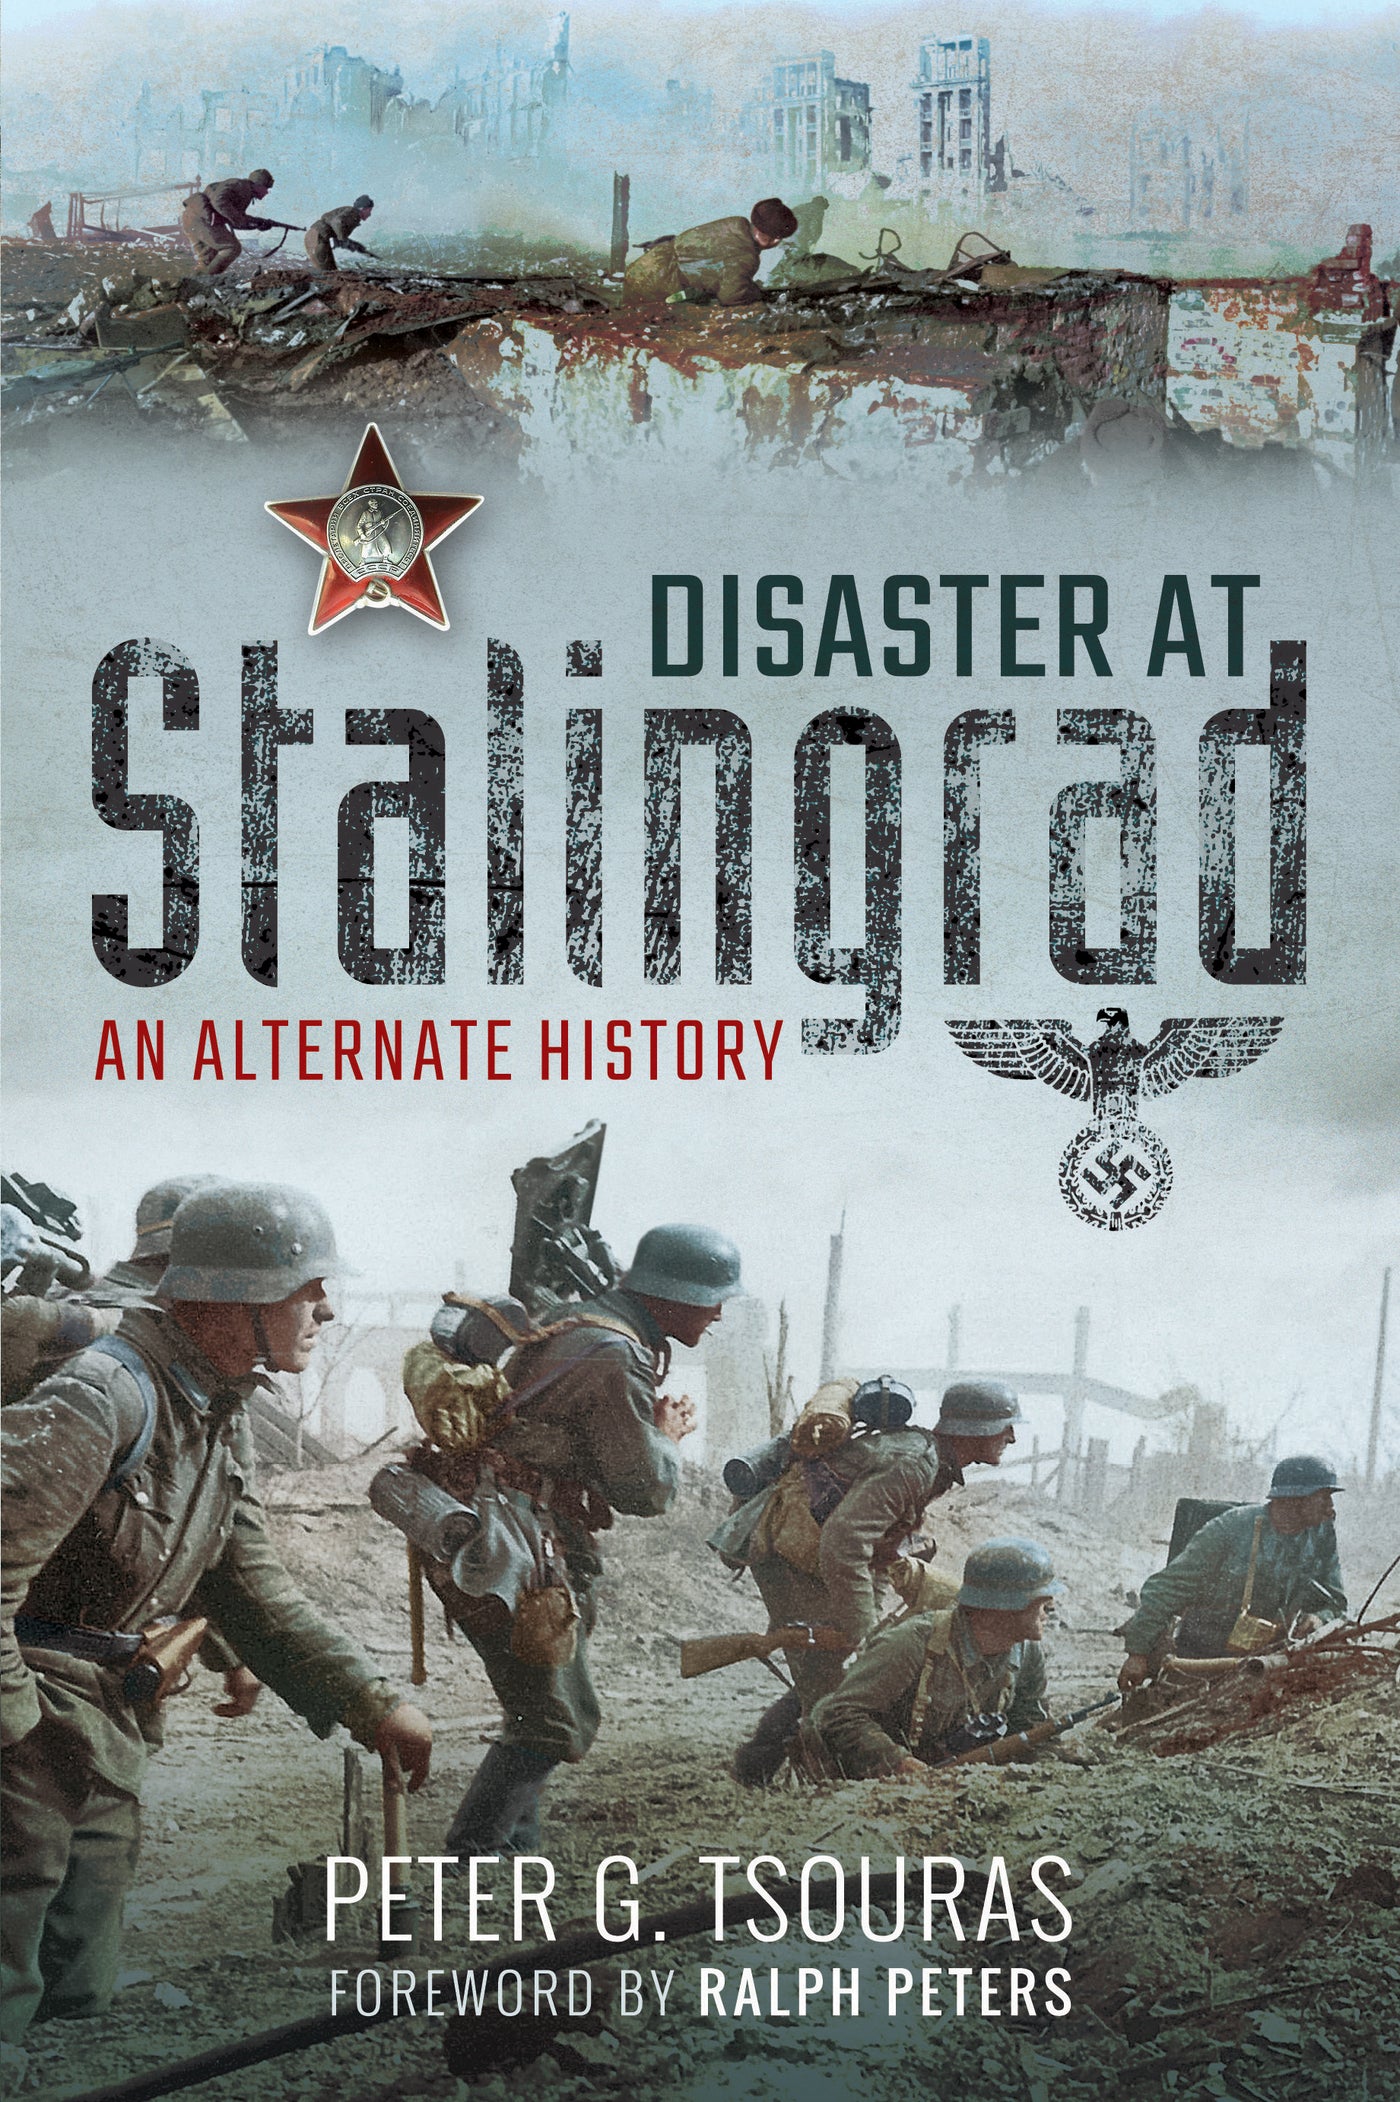 Disaster at Stalingrad